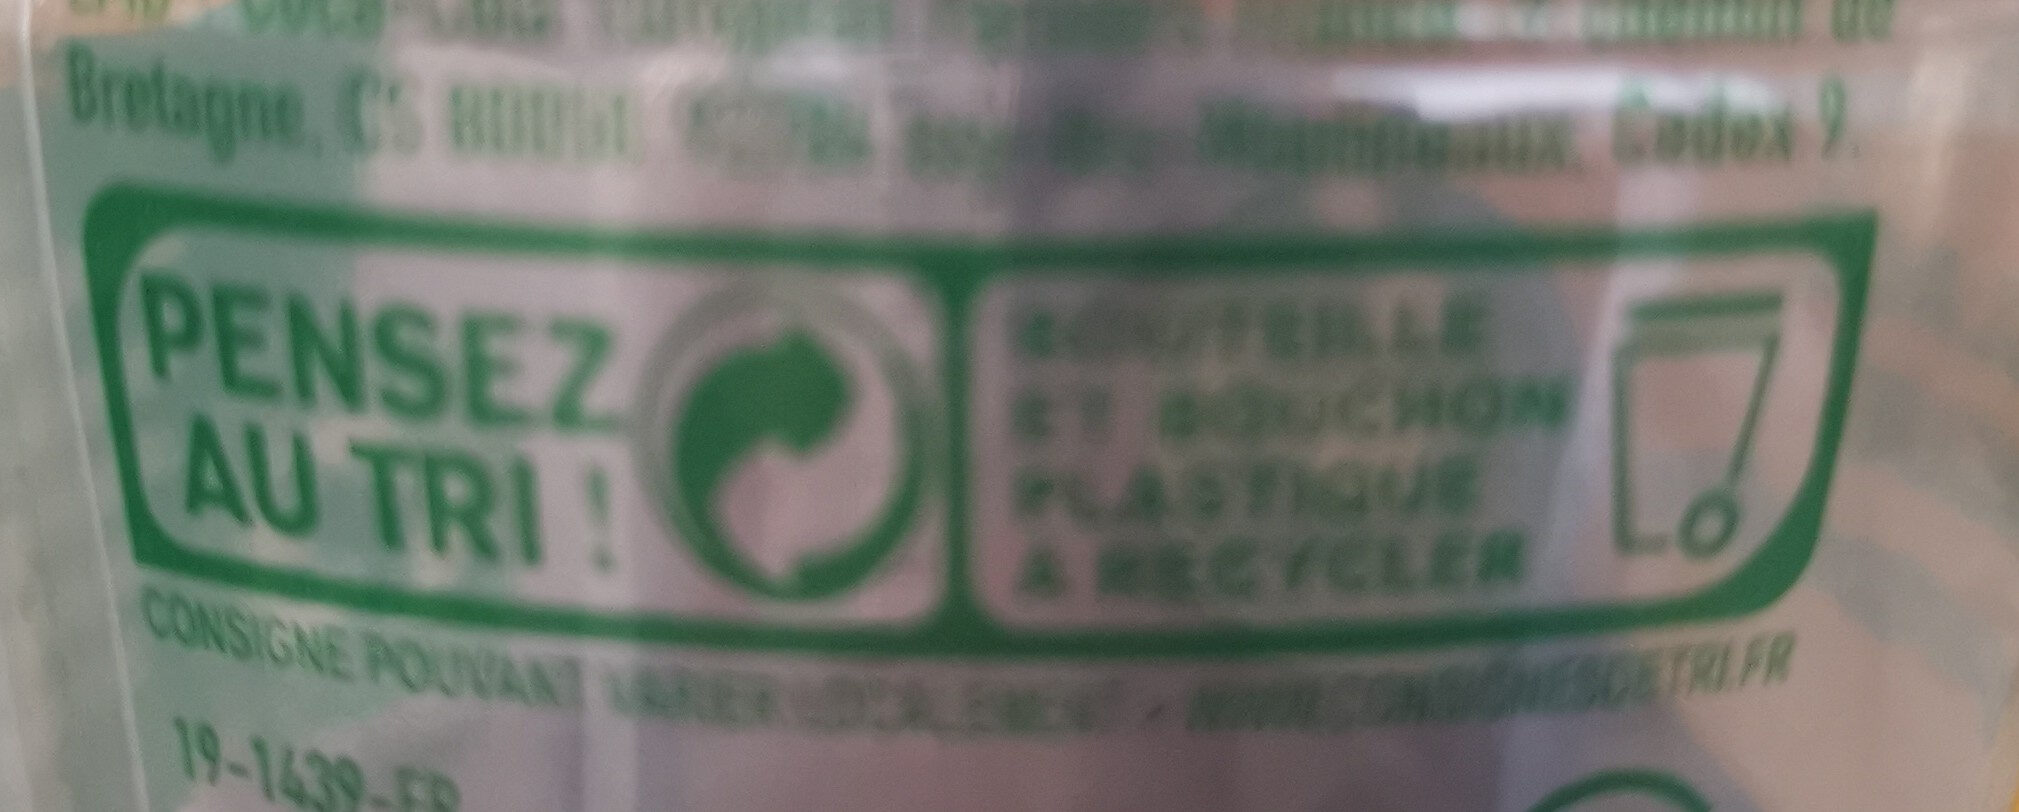 fuze tea - Instruction de recyclage et/ou informations d'emballage